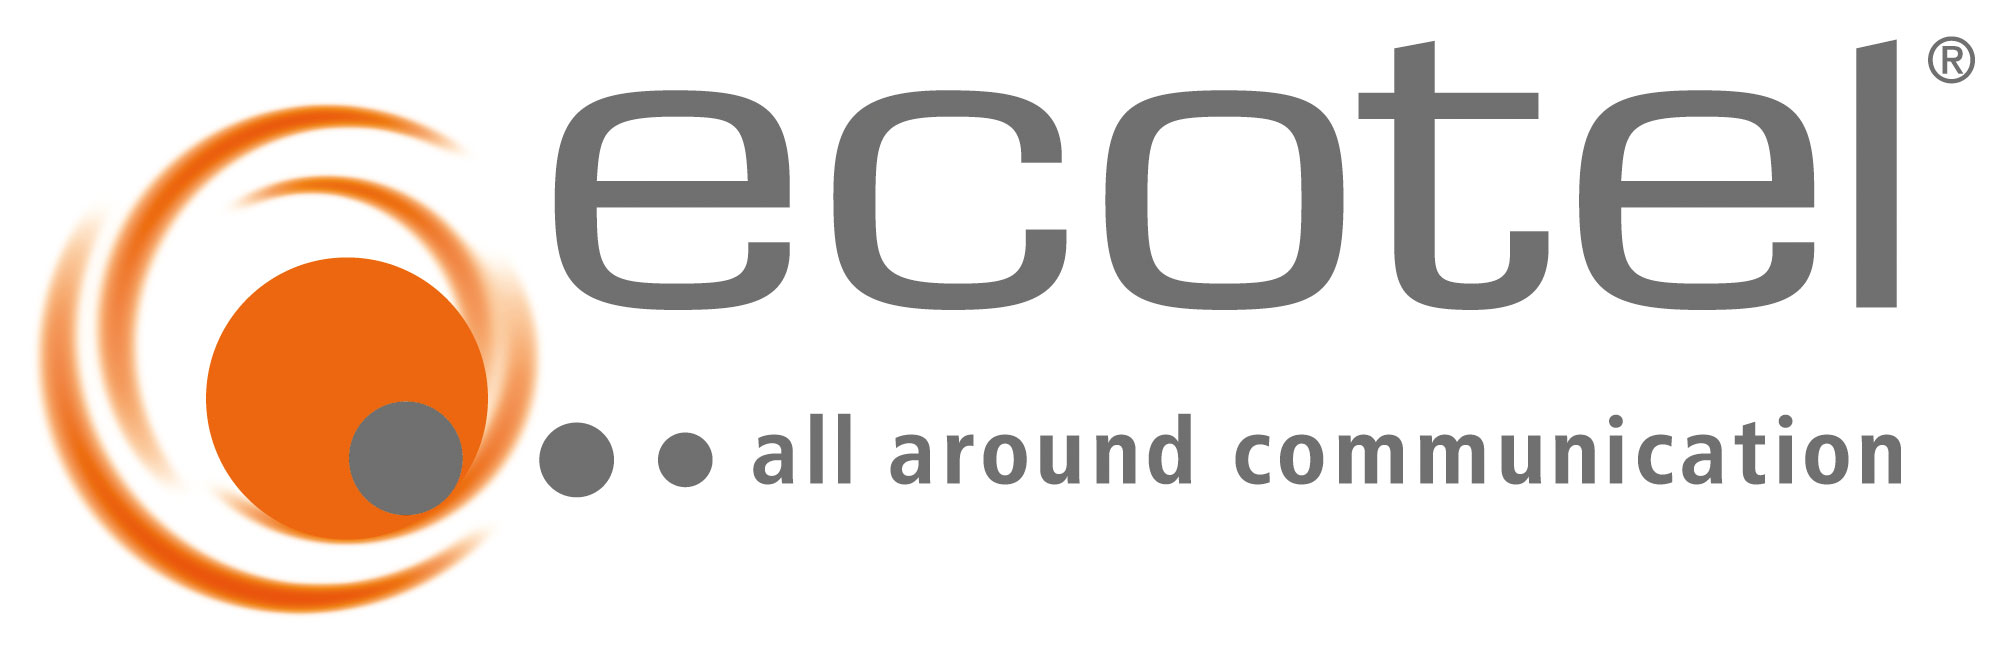 Ekotel Logo photo - 1